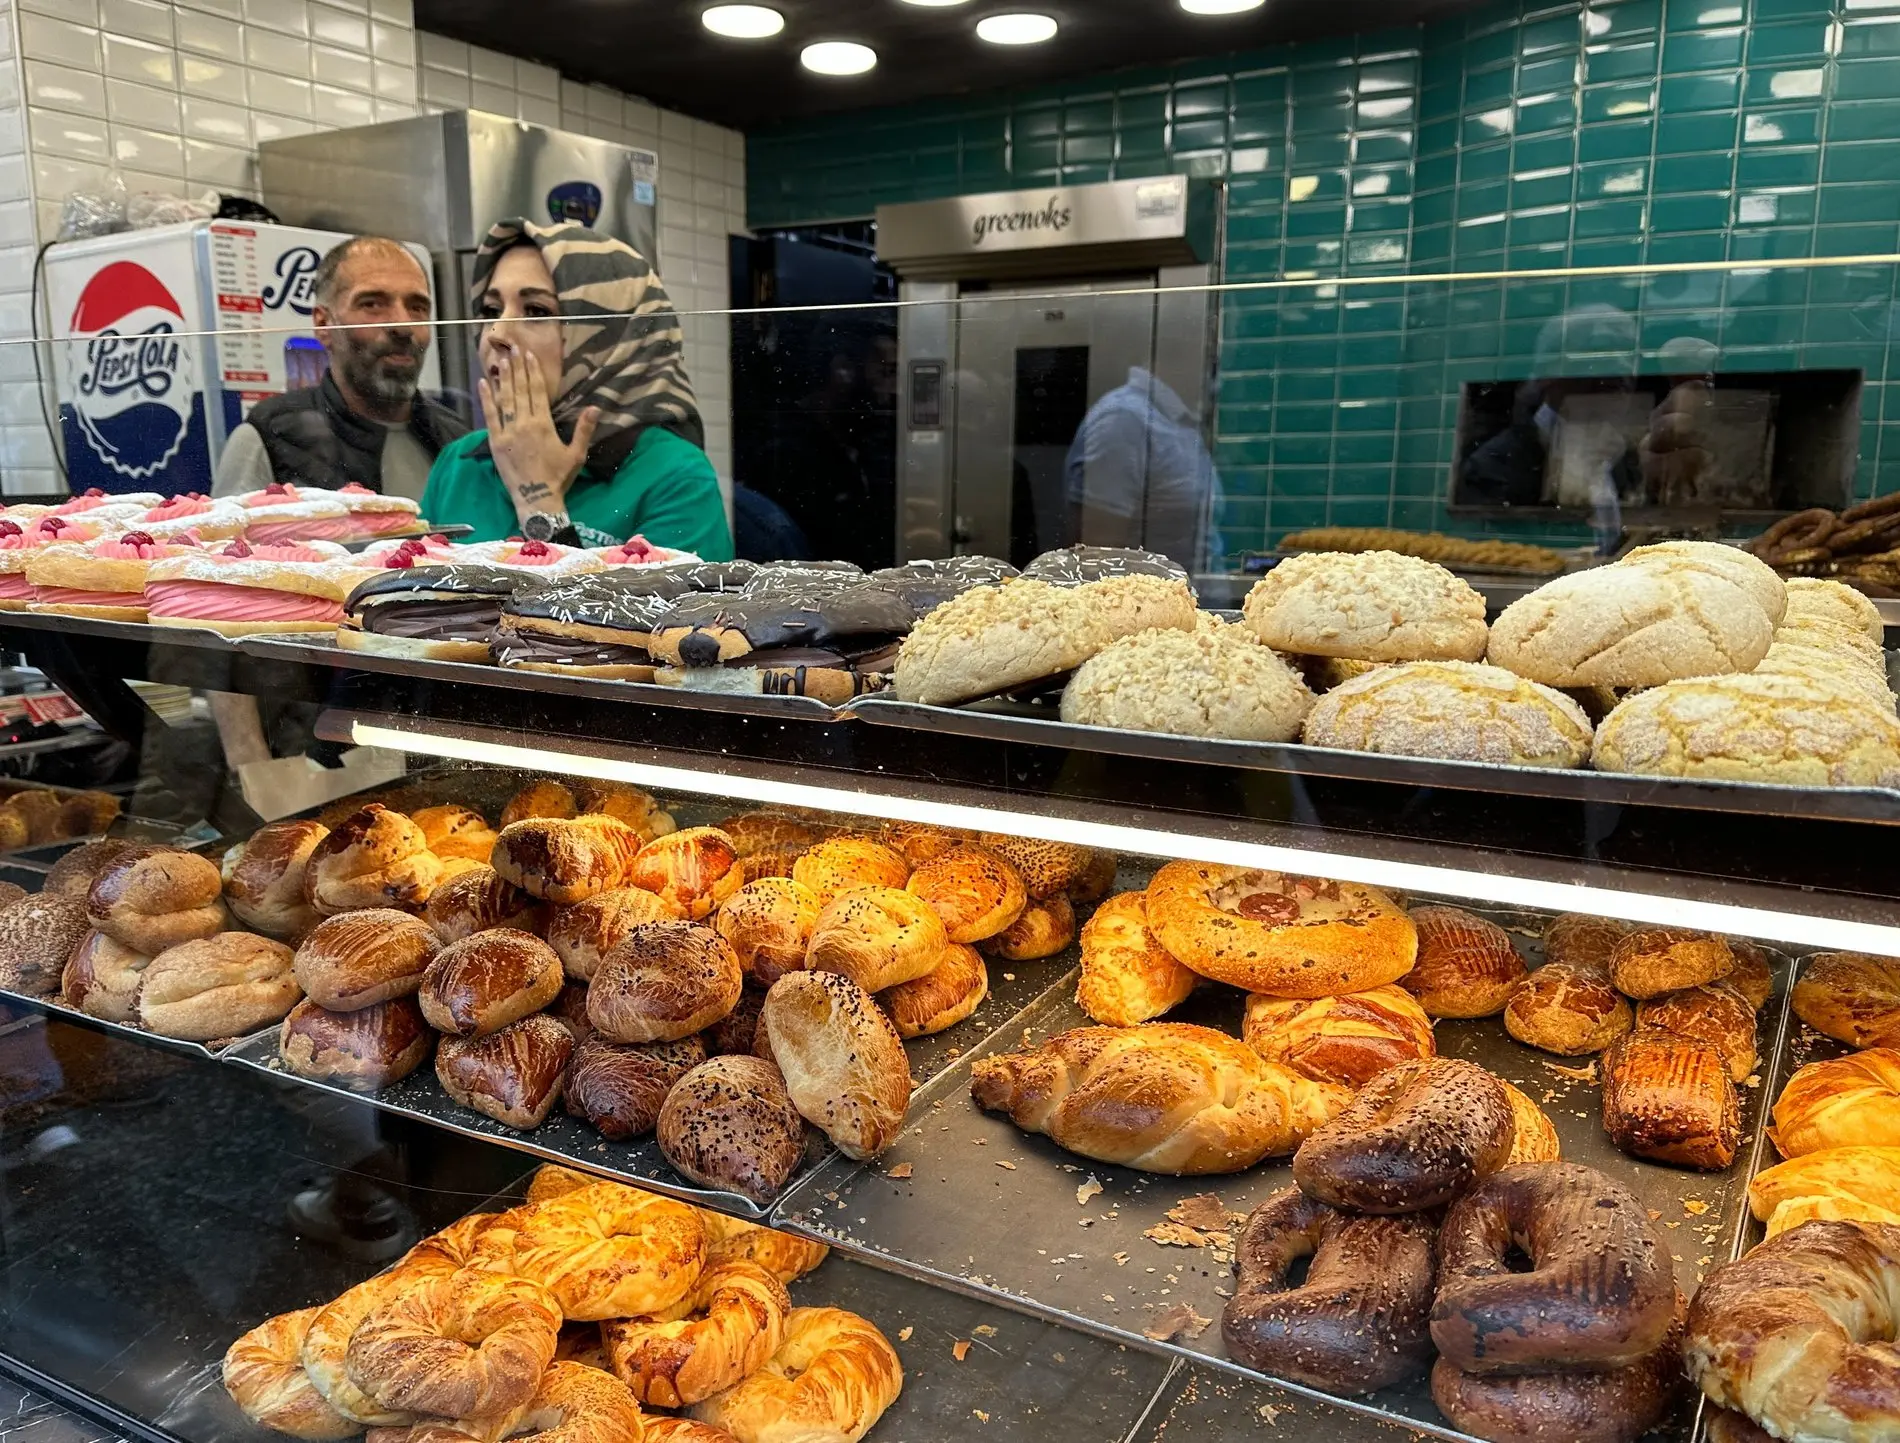 Bild einer türkischen Bäckerei